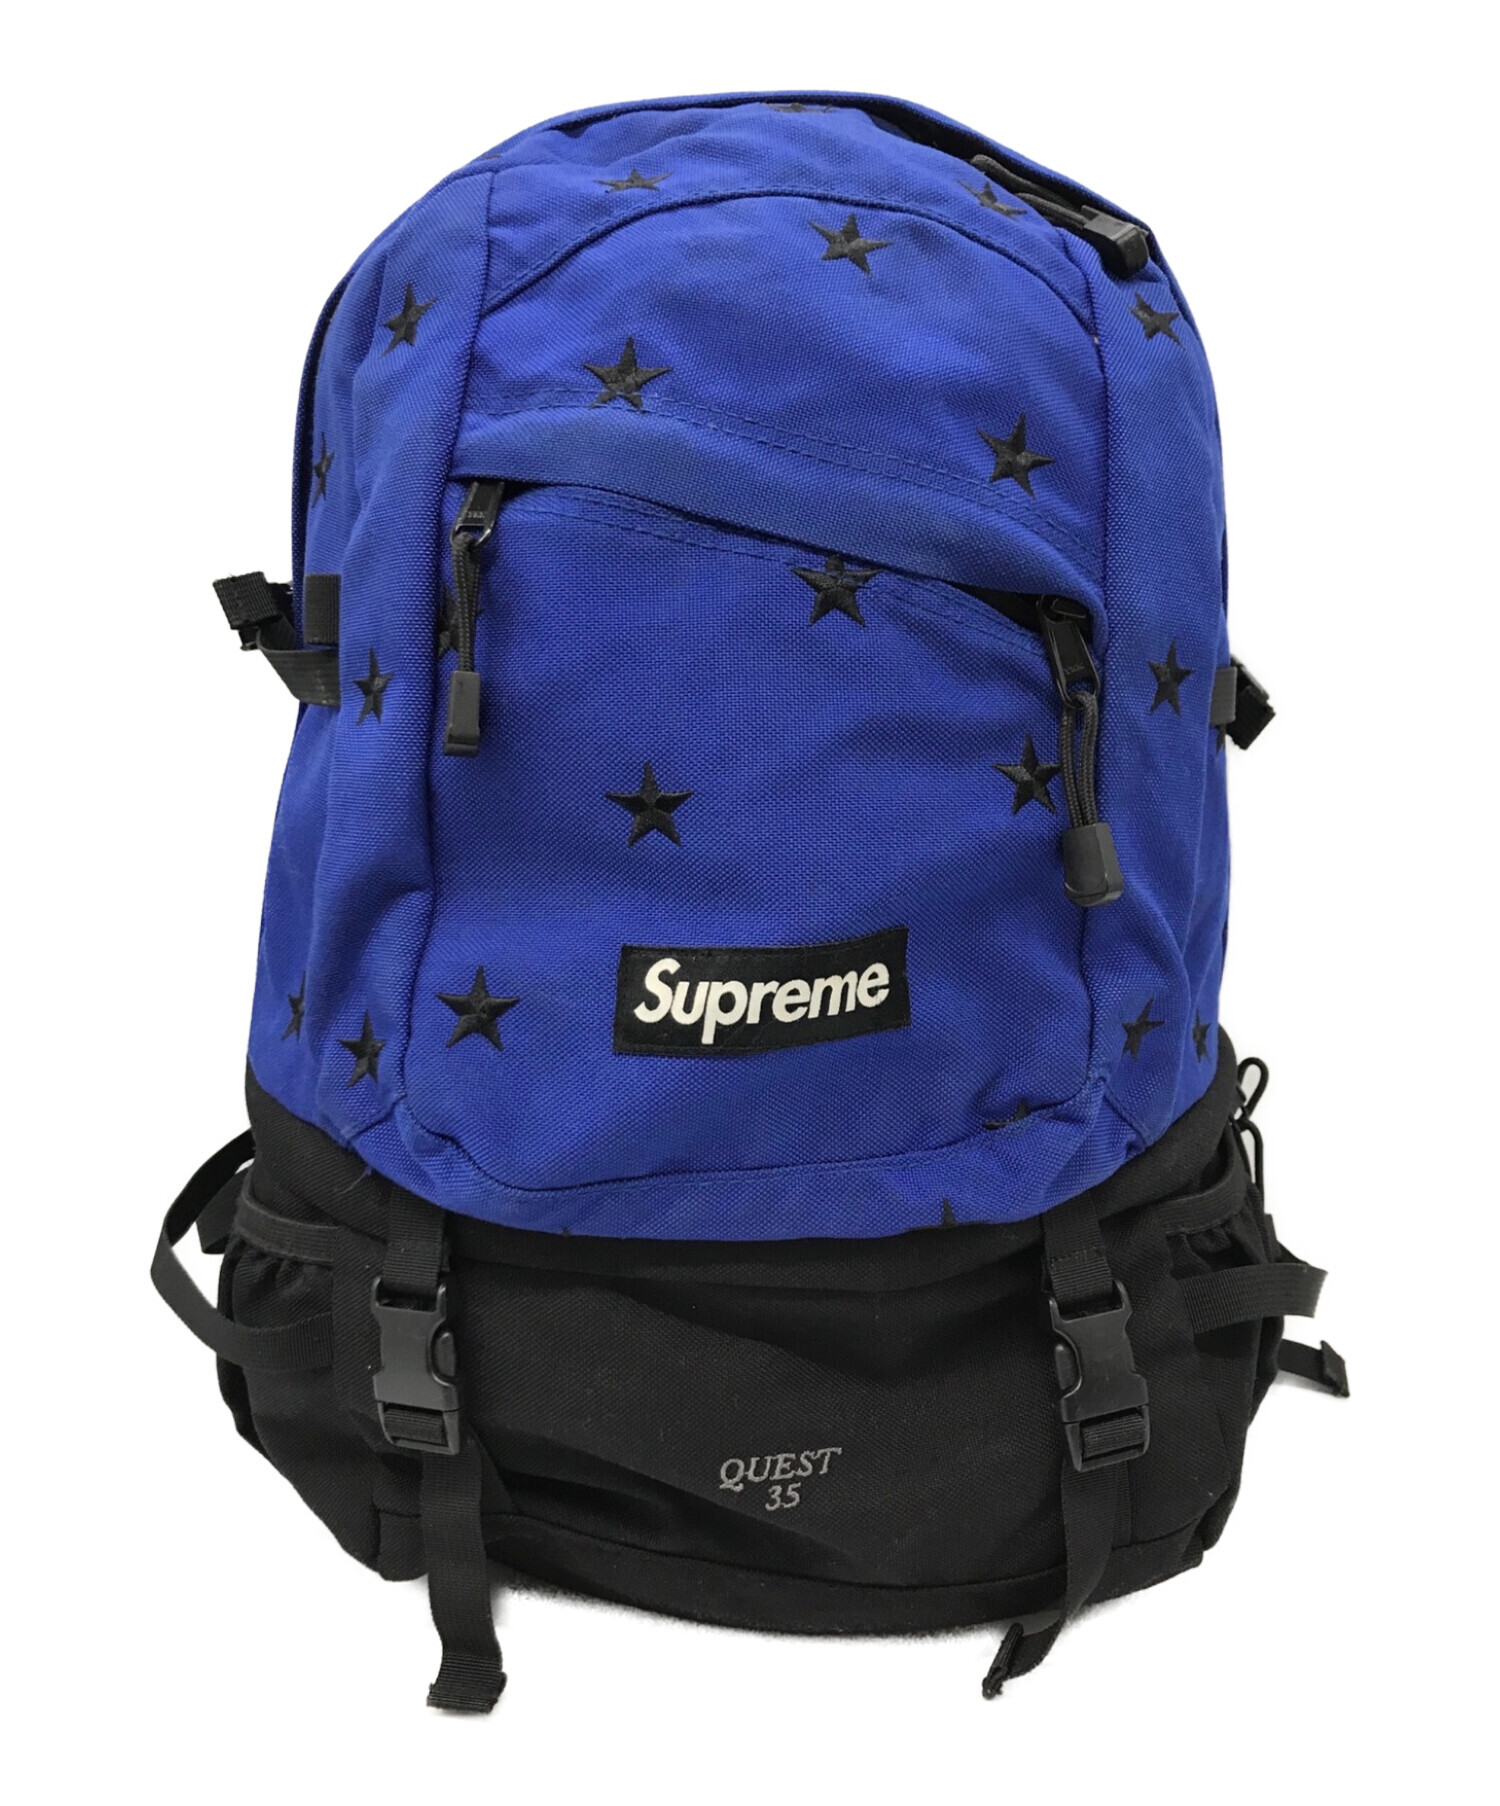 Supreme シュプリーム Backpack ブルー